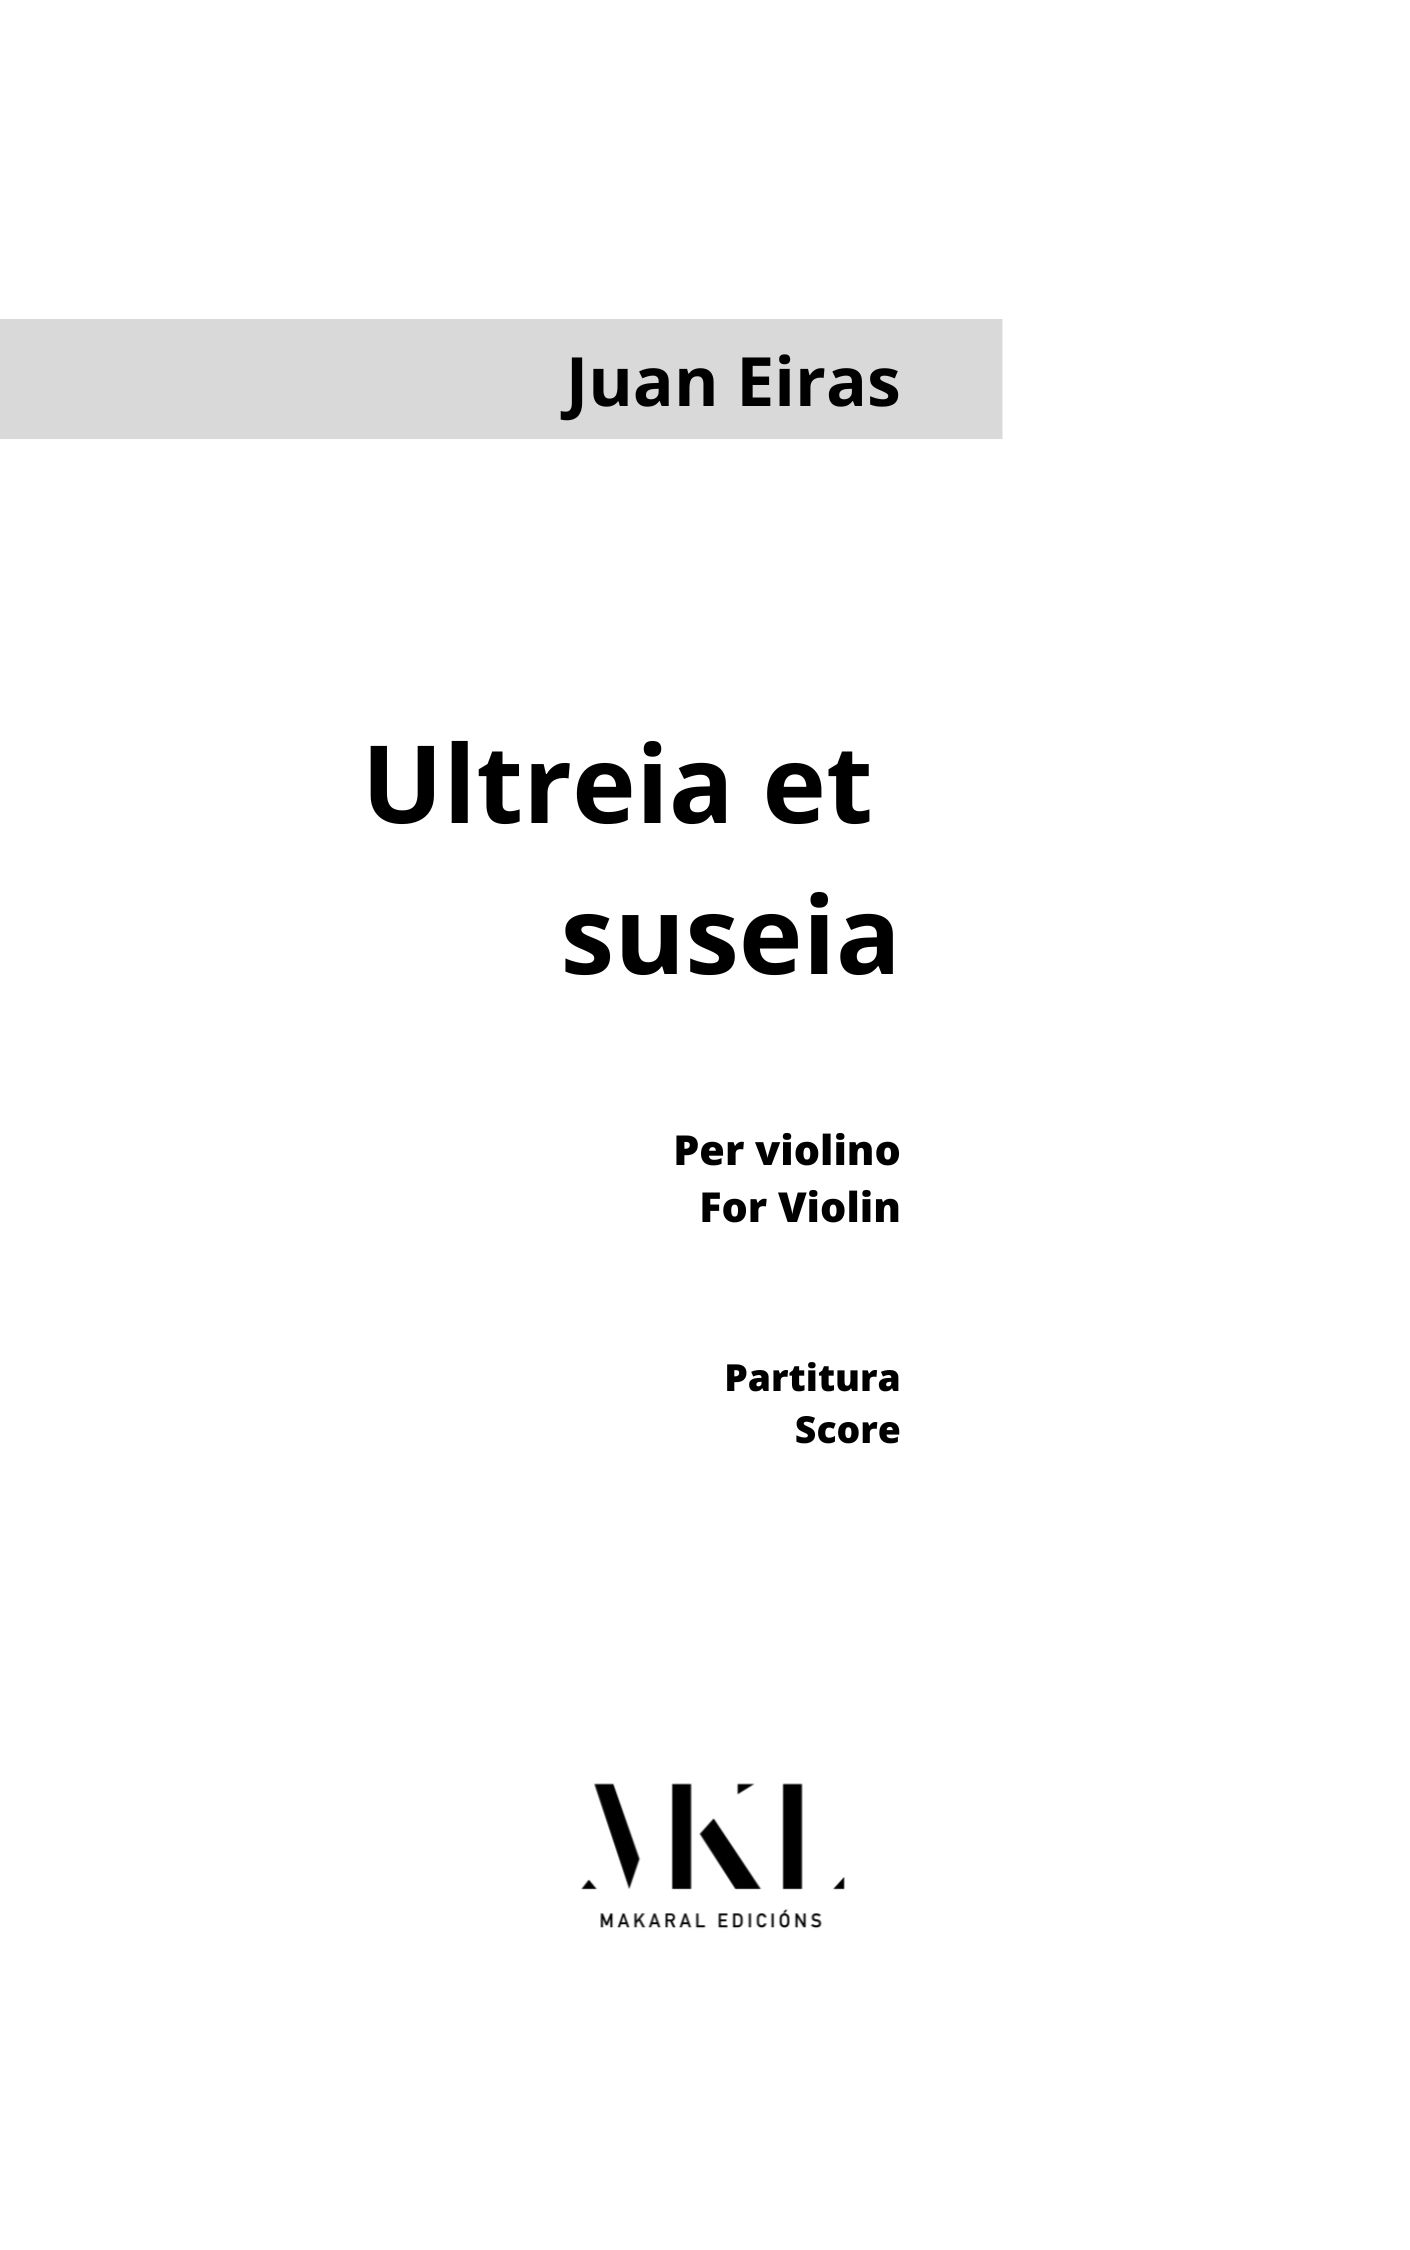 <p translate="no">Ultreia et suseia<p>